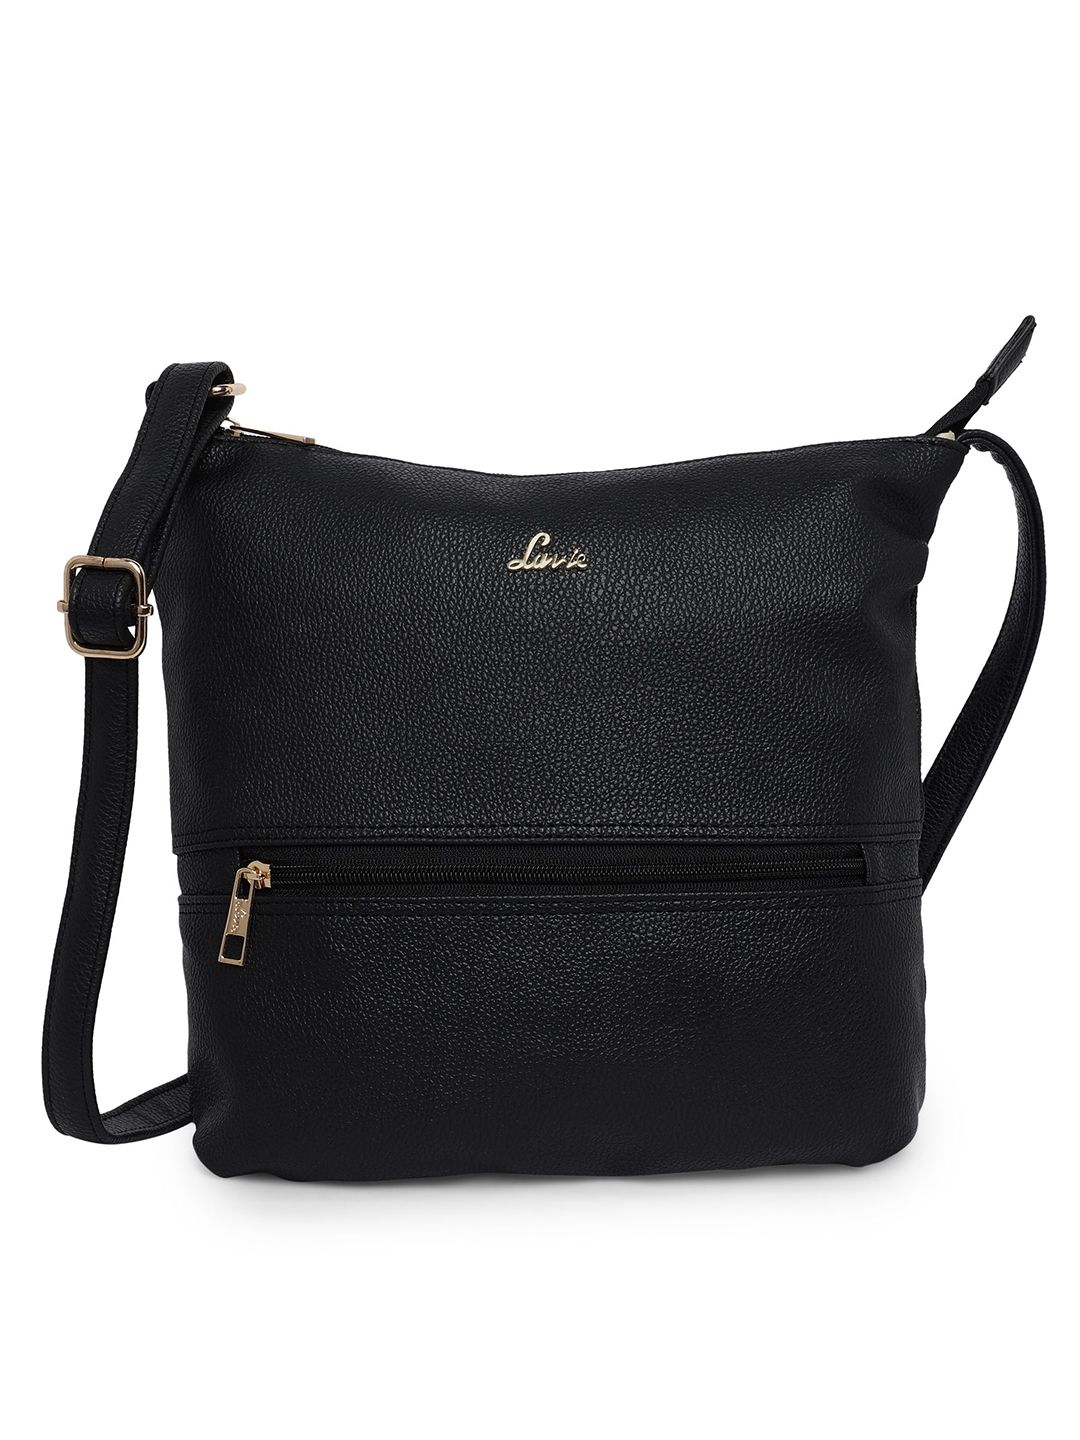 Lavie Black Textured Sling Bag Price in India